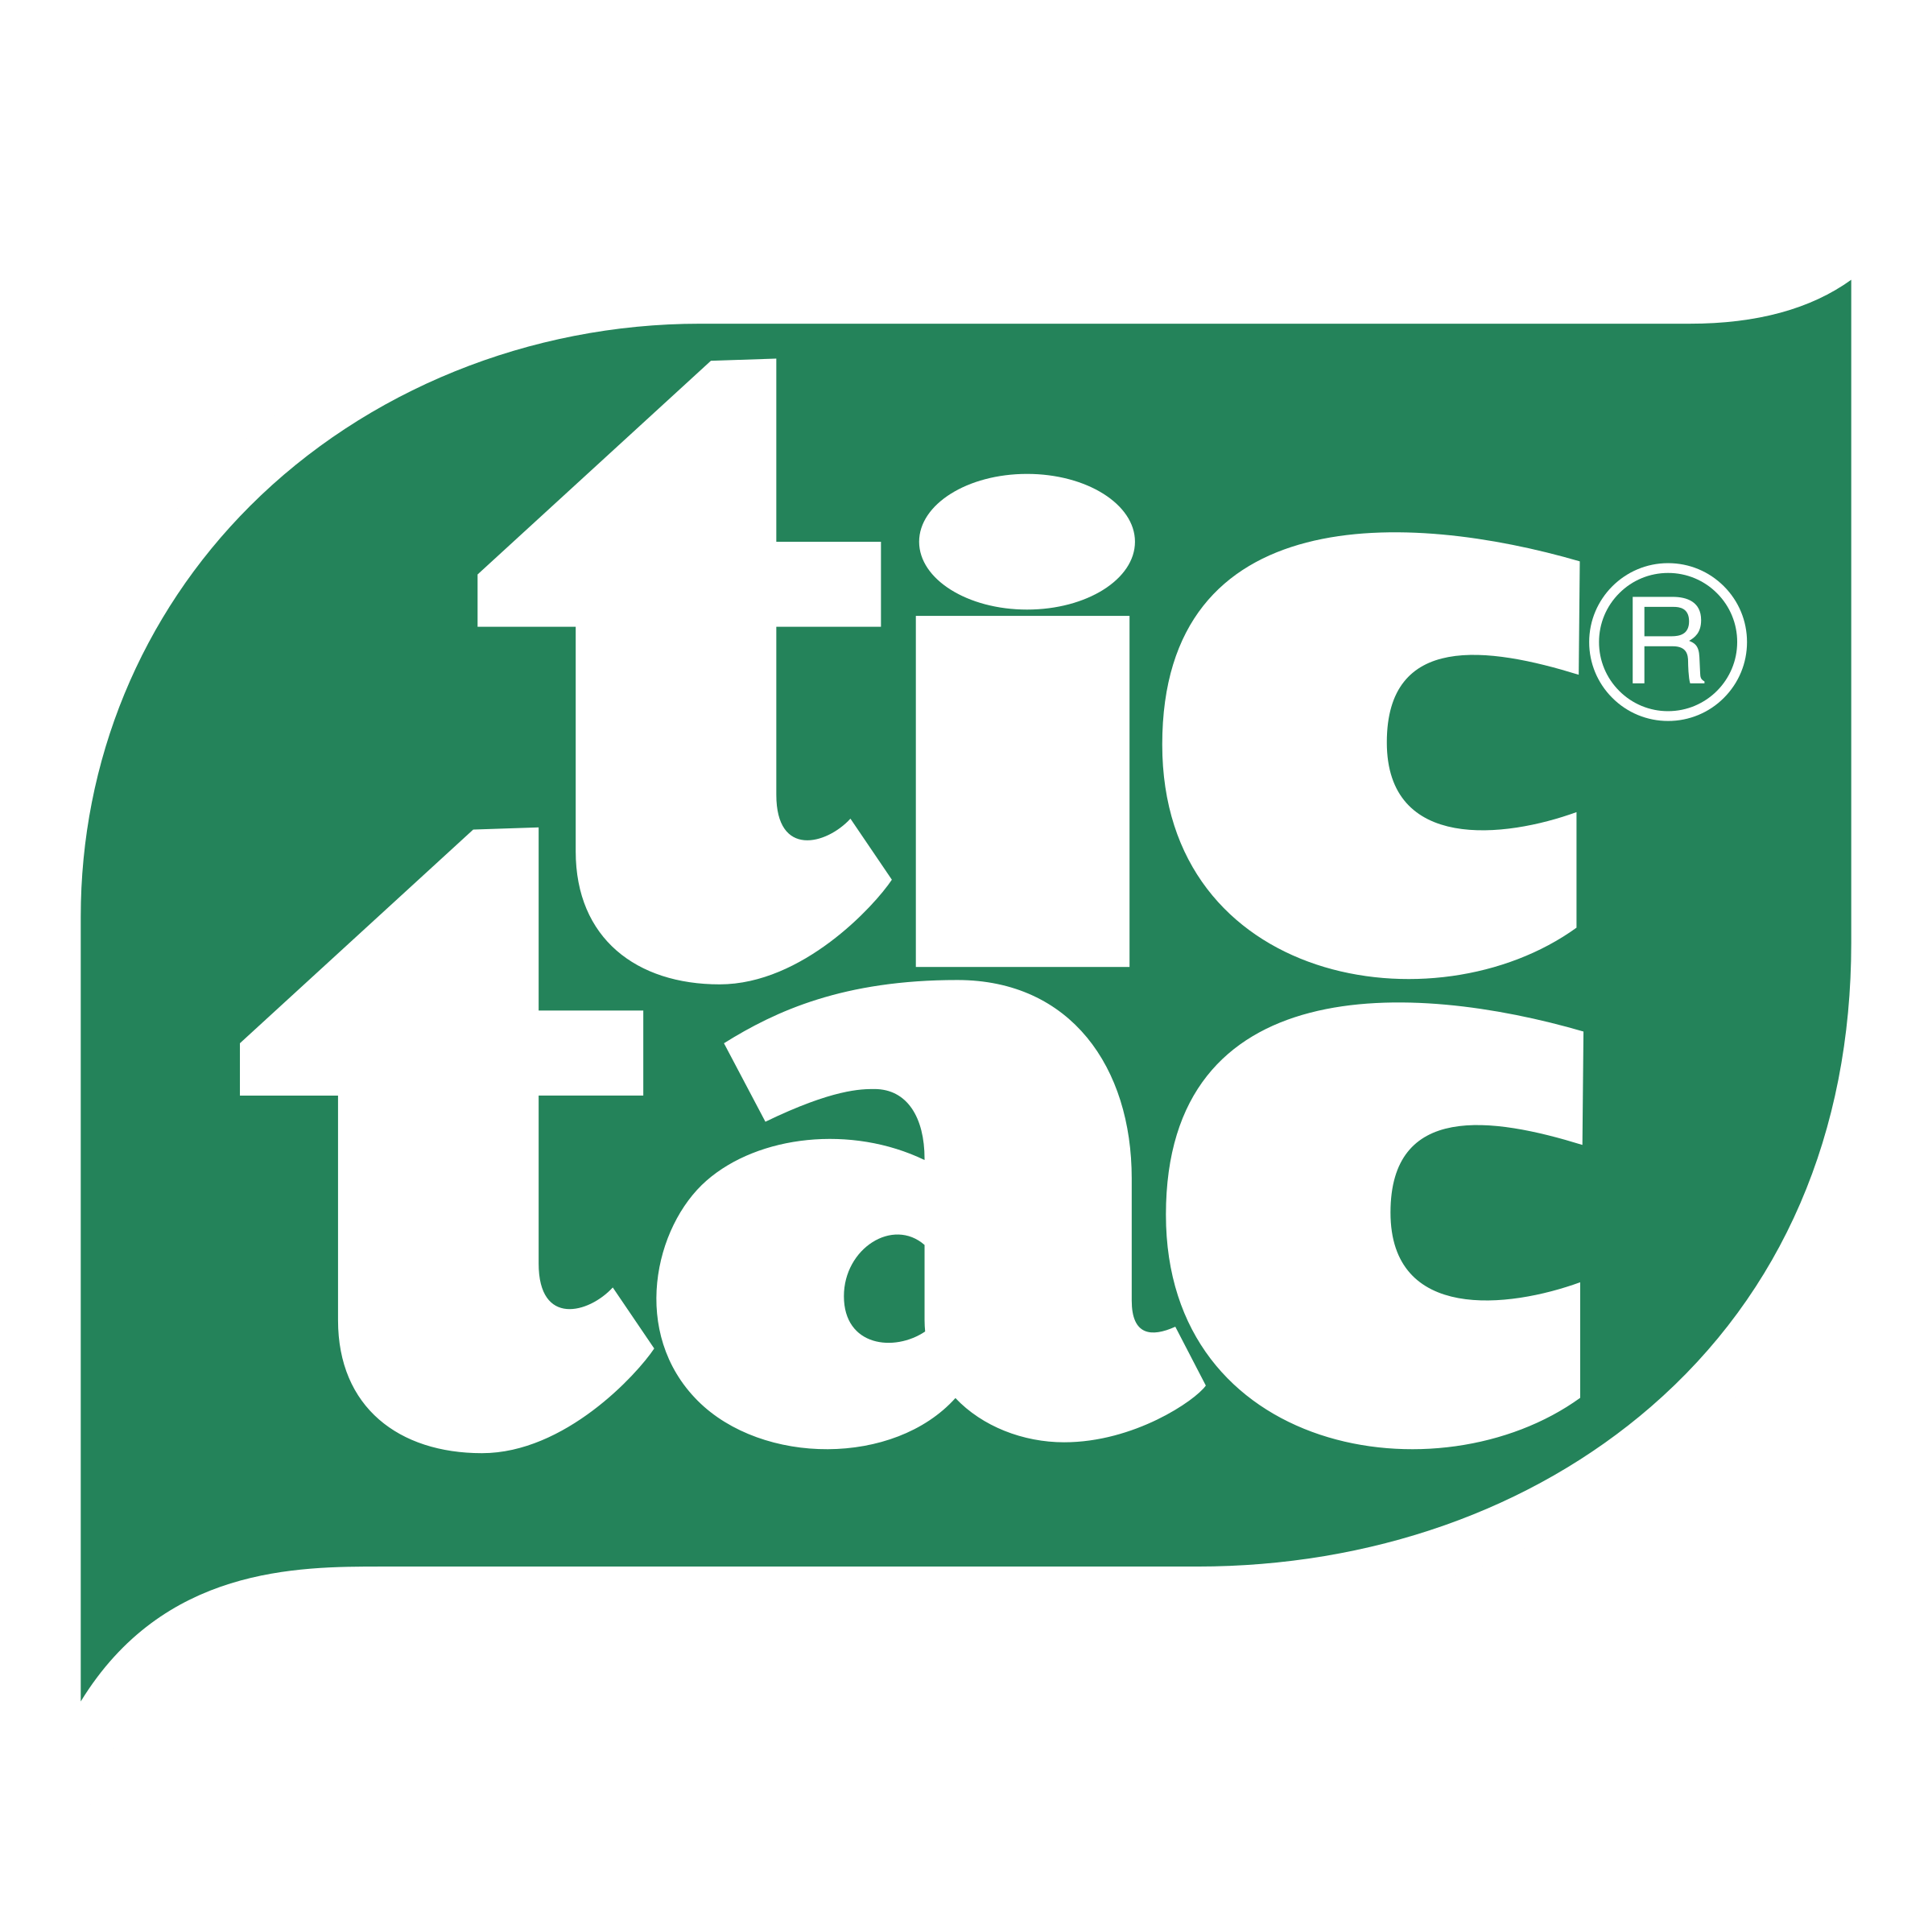 Tic Logo - Tic Tac Logo PNG Transparent & SVG Vector